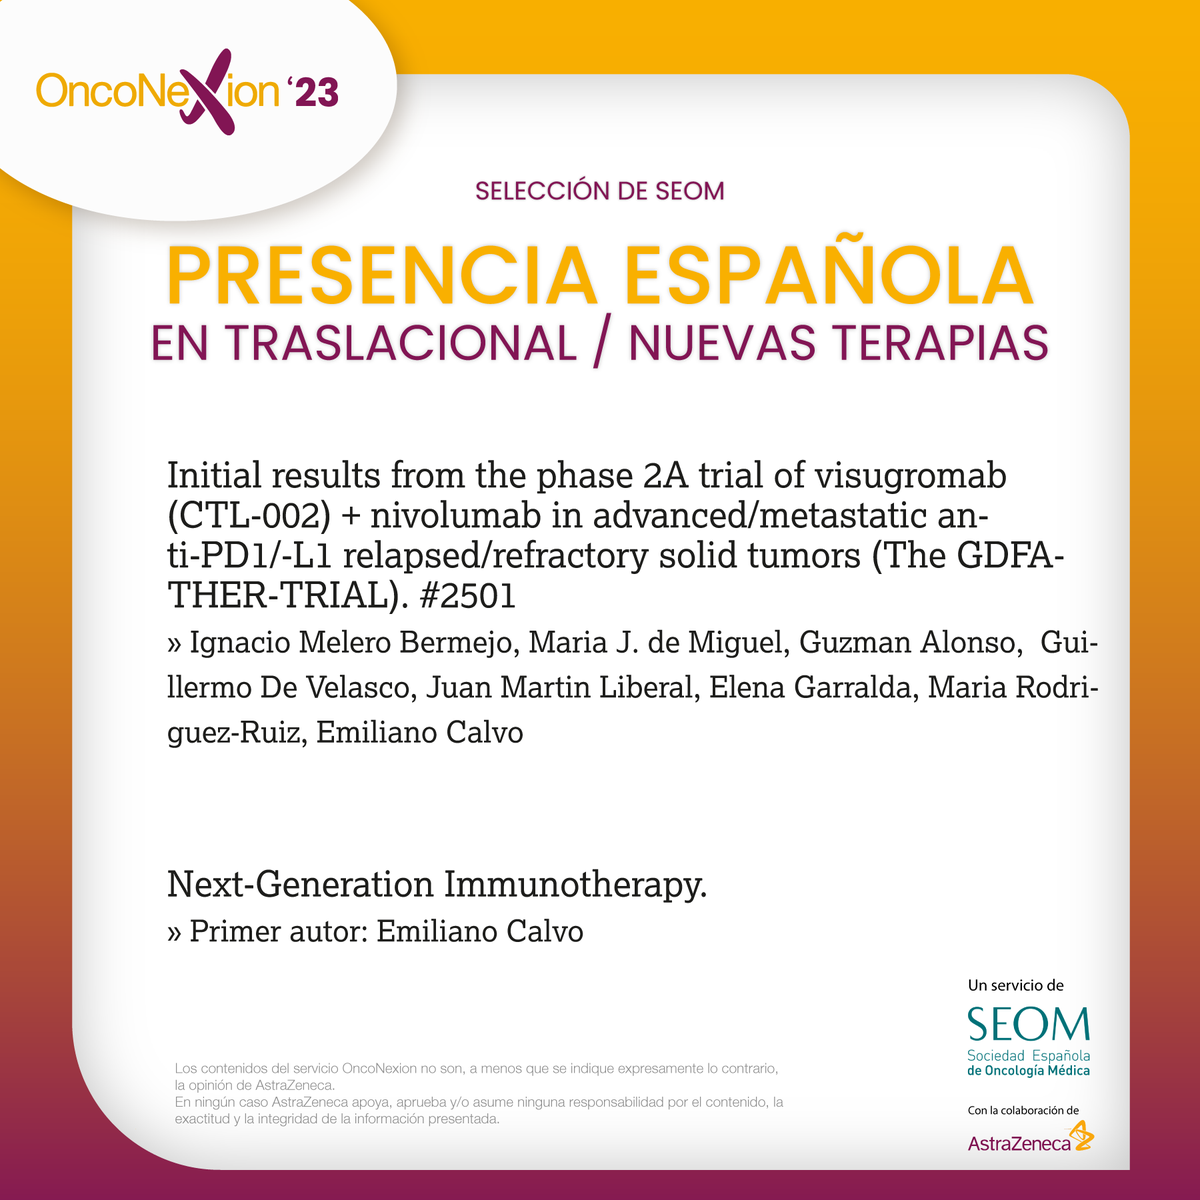 ⭕️ Participación española en investigación #traslacional y nuevas terapias en #ASCO23 seleccionados por el portavoz de @SEOM, Dr. @Rodrosb  

onconexion.es #OncoNexion23 @ASCO